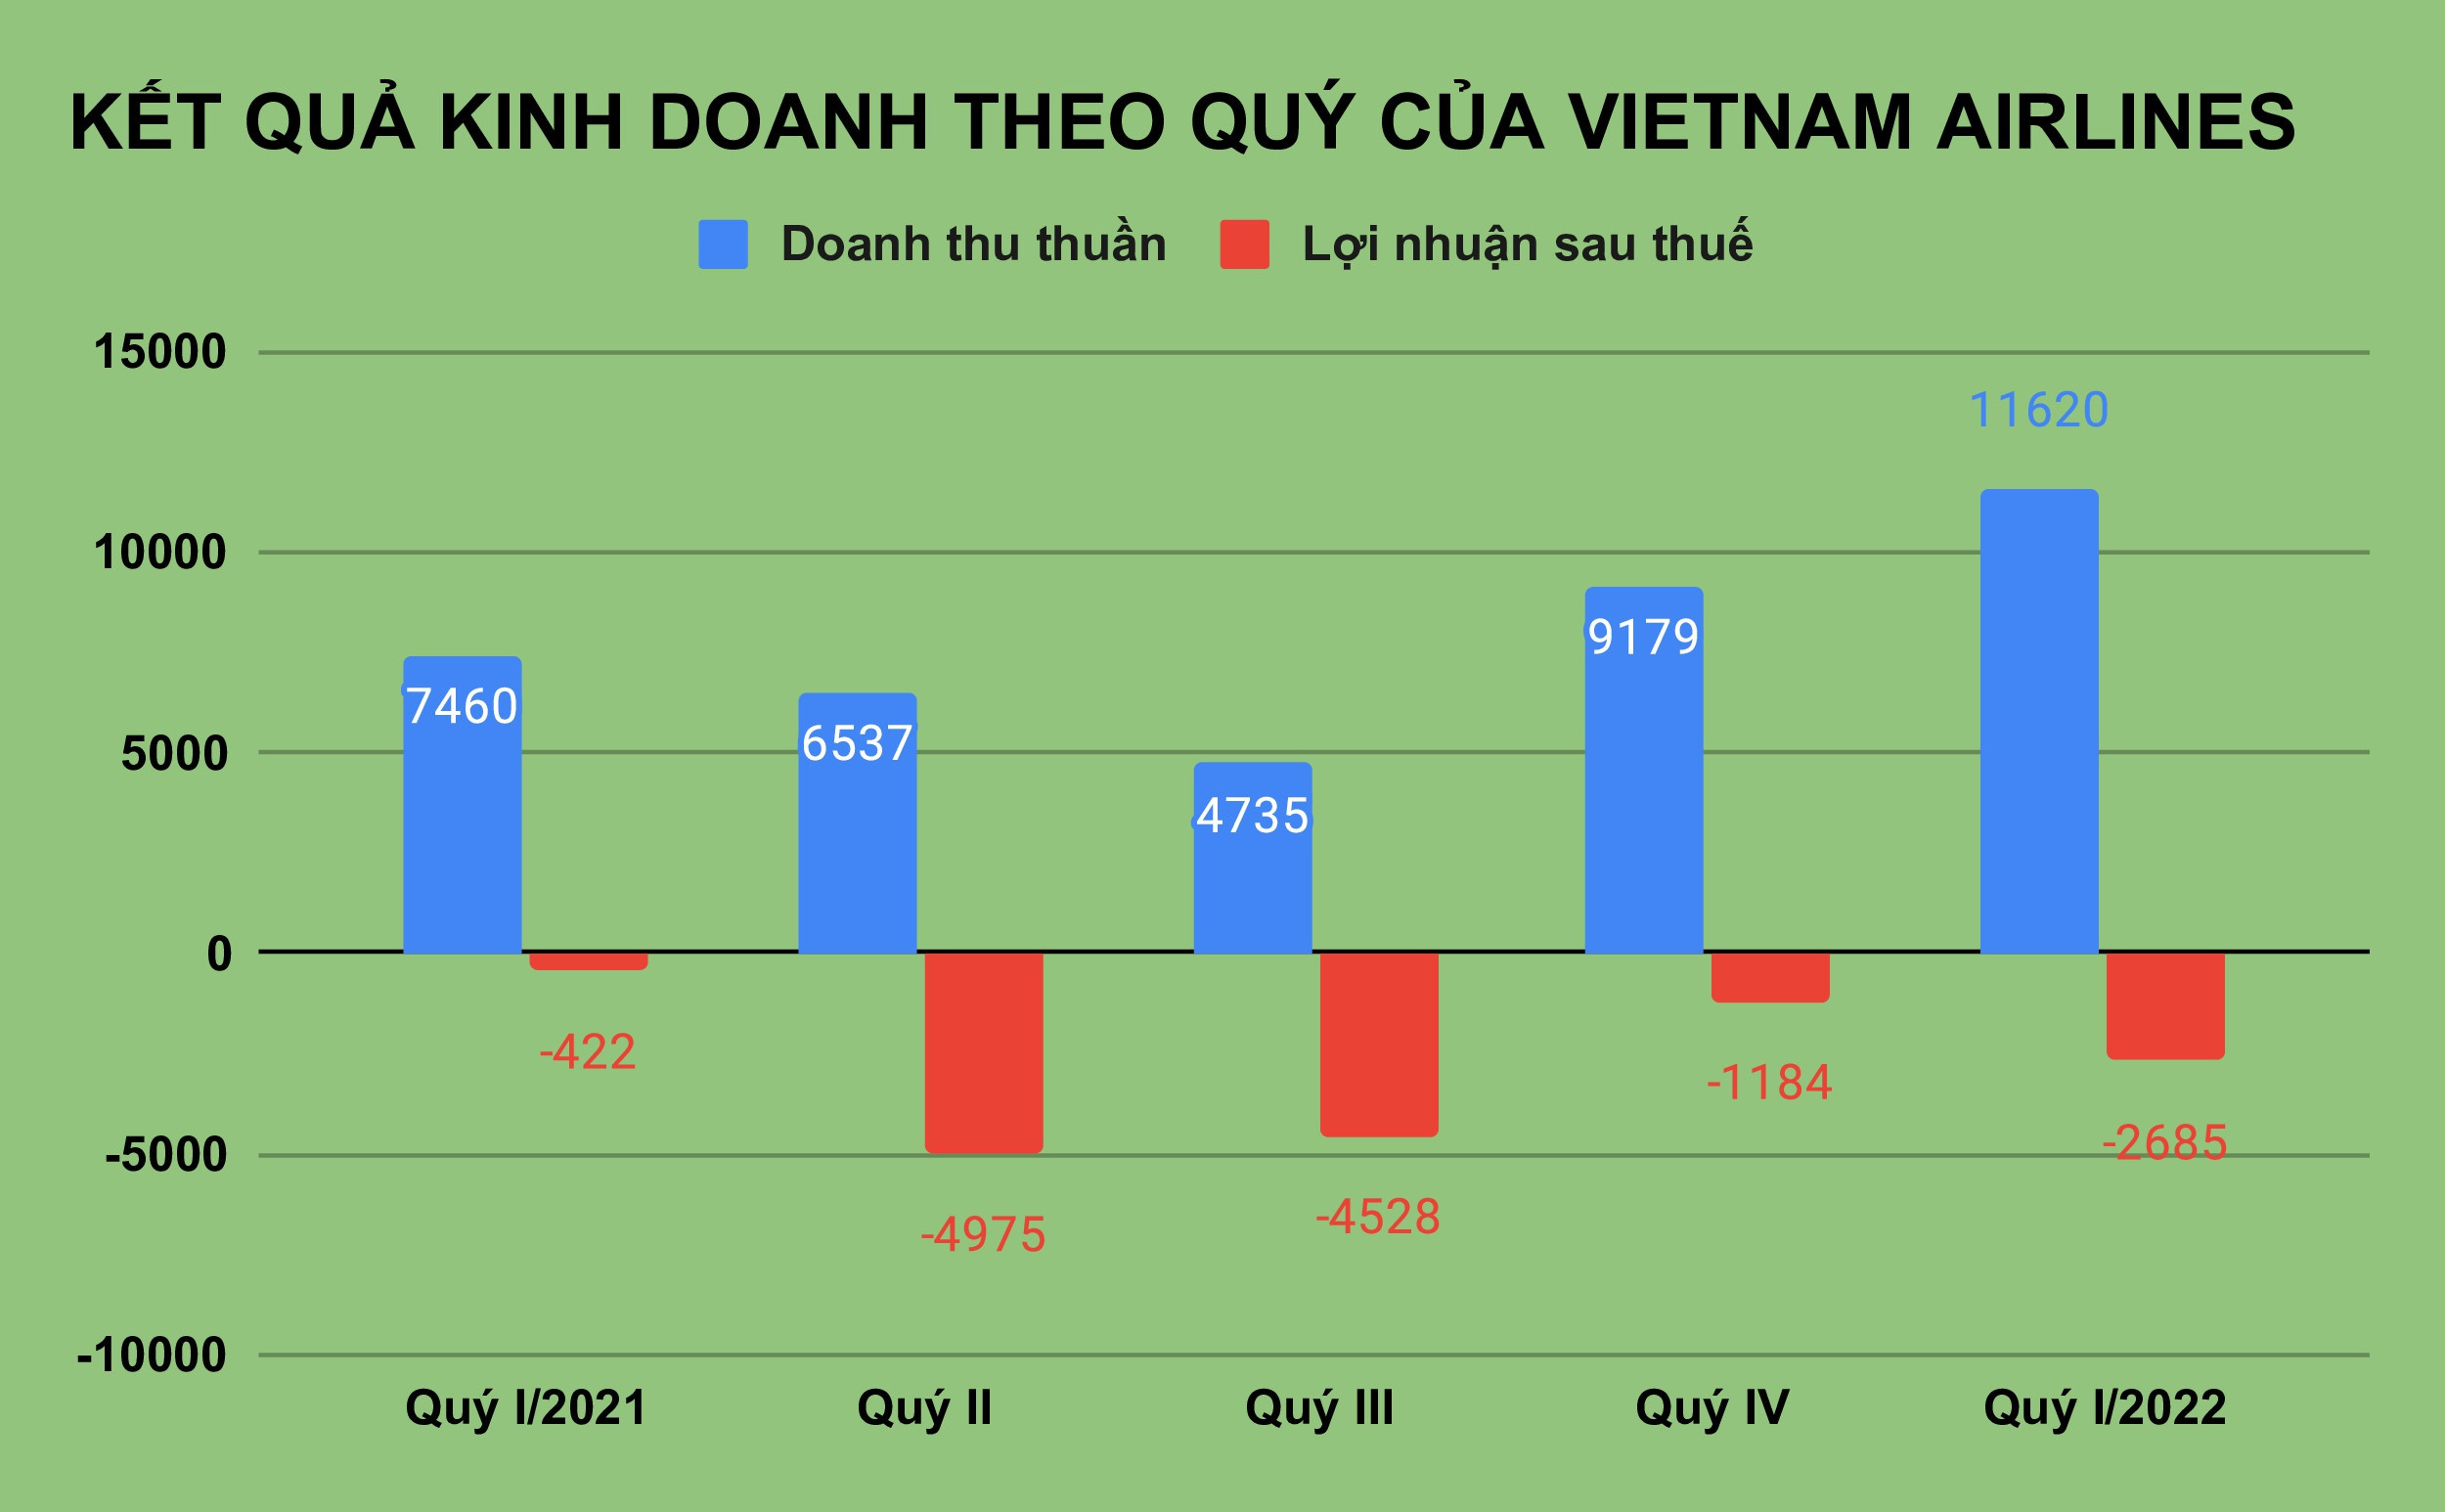 Lương Chủ tịch Vietnam Airlines bao nhiêu khi hãng lỗ lũy kế 1 tỷ USD? - 1